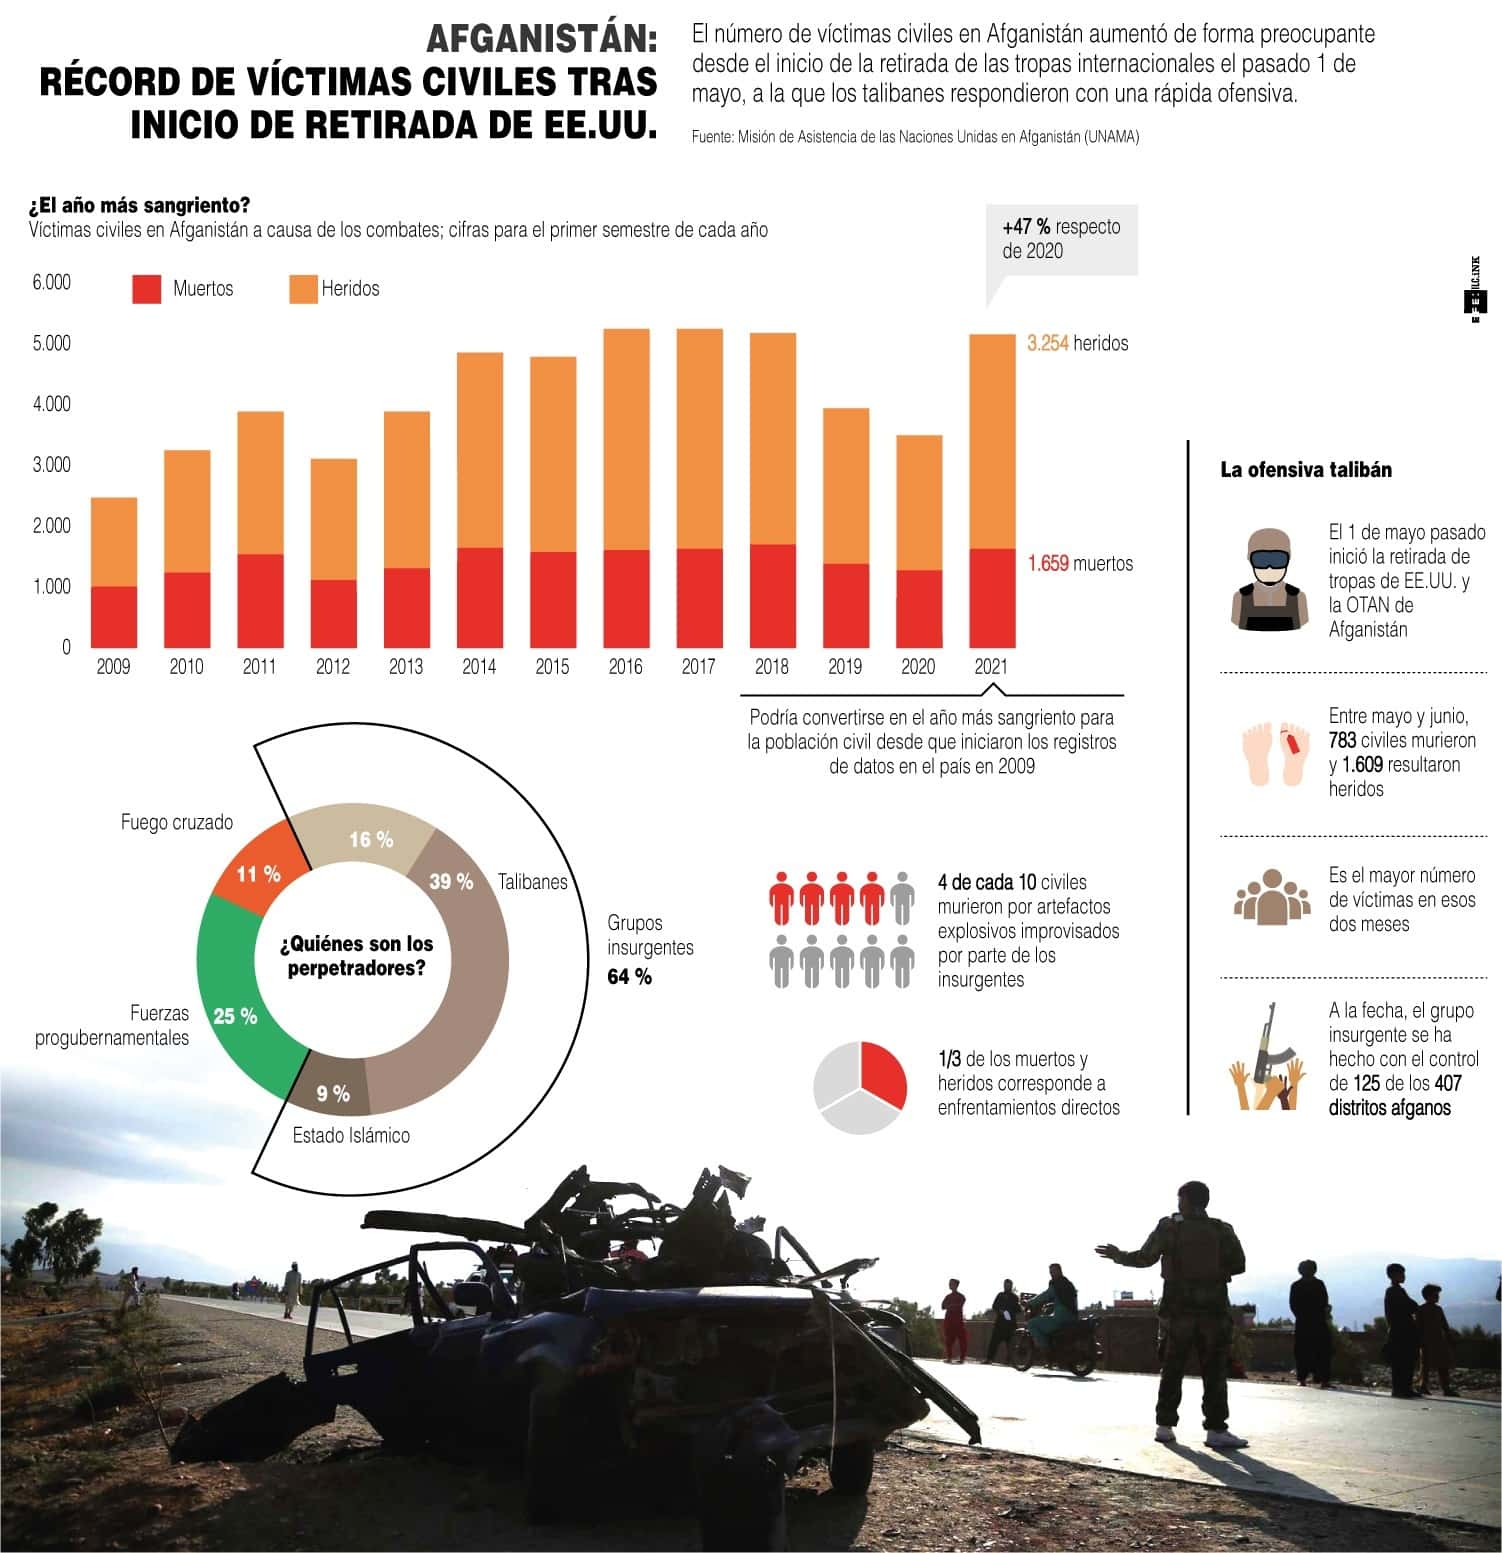 [Infografía] Récord de víctimas civiles en Afganistán tras inicio de la retirada de EE. UU. 1